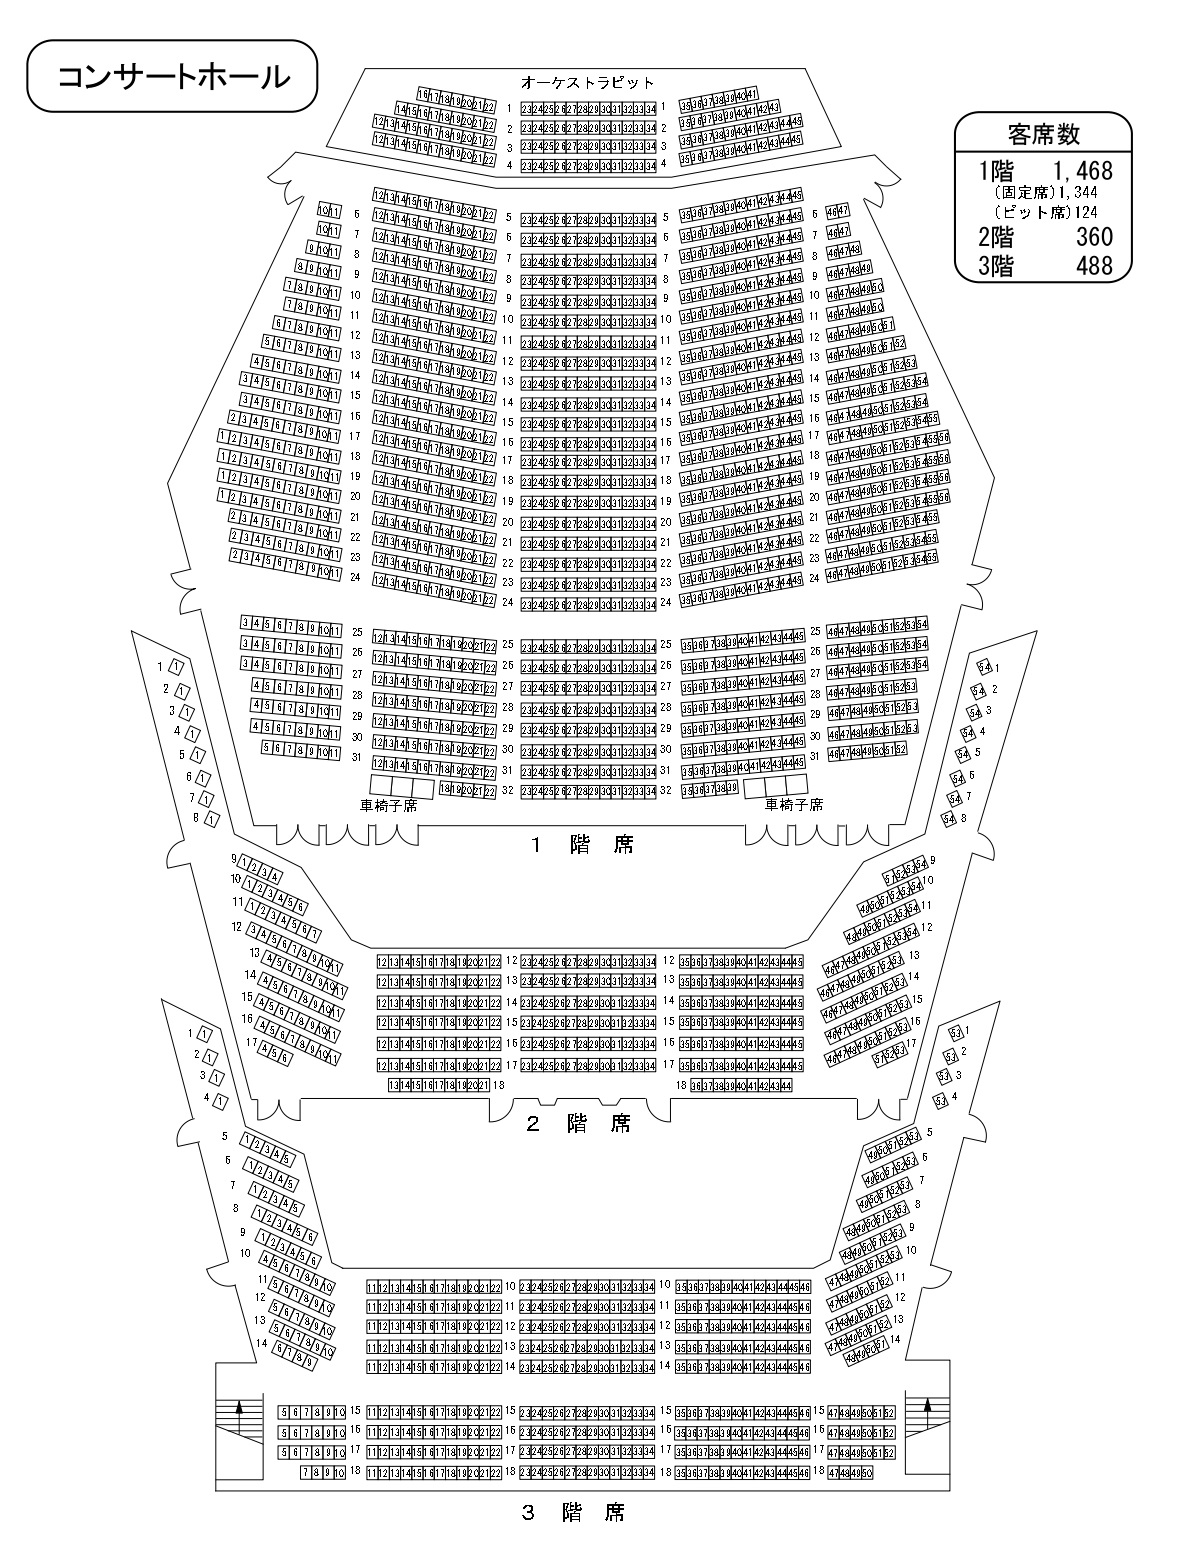 福岡サンパレス 座席表と見え方やキャパを階別に徹底解説します 座席ウォッチャー